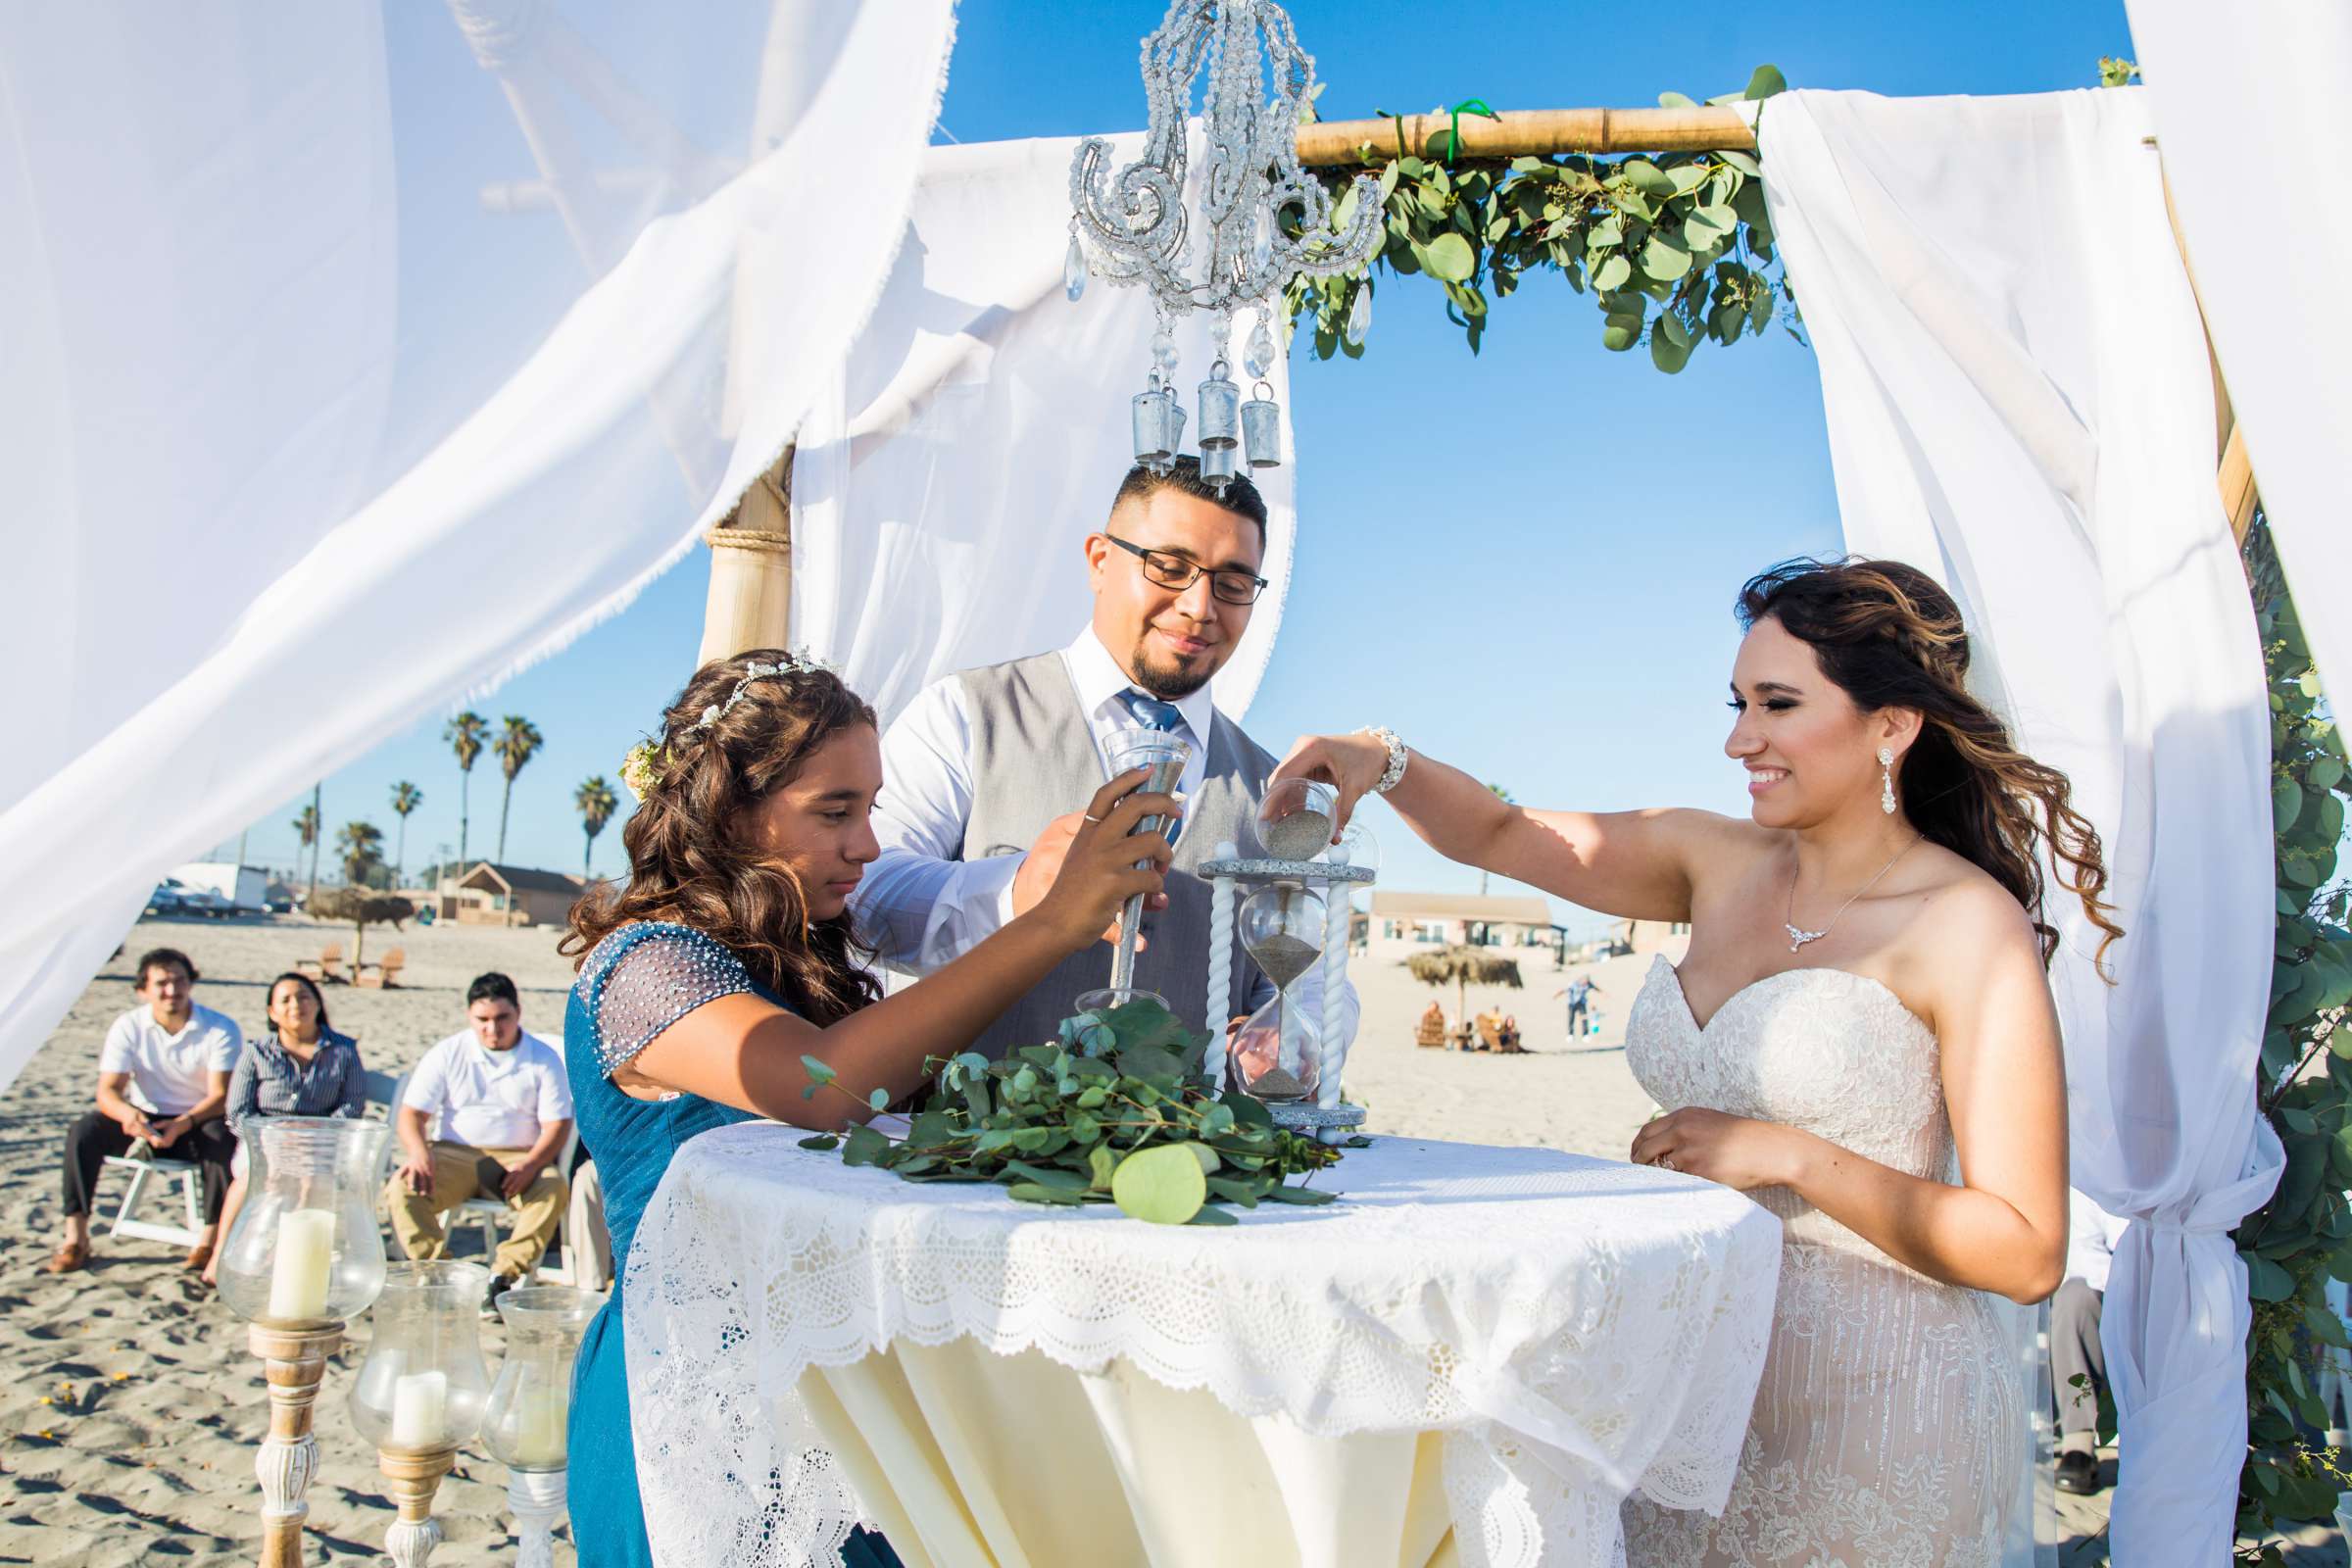 Del Mar Beach Resort Wedding coordinated by La Casa Del Mar, Alisa and Carlos Wedding Photo #380889 by True Photography